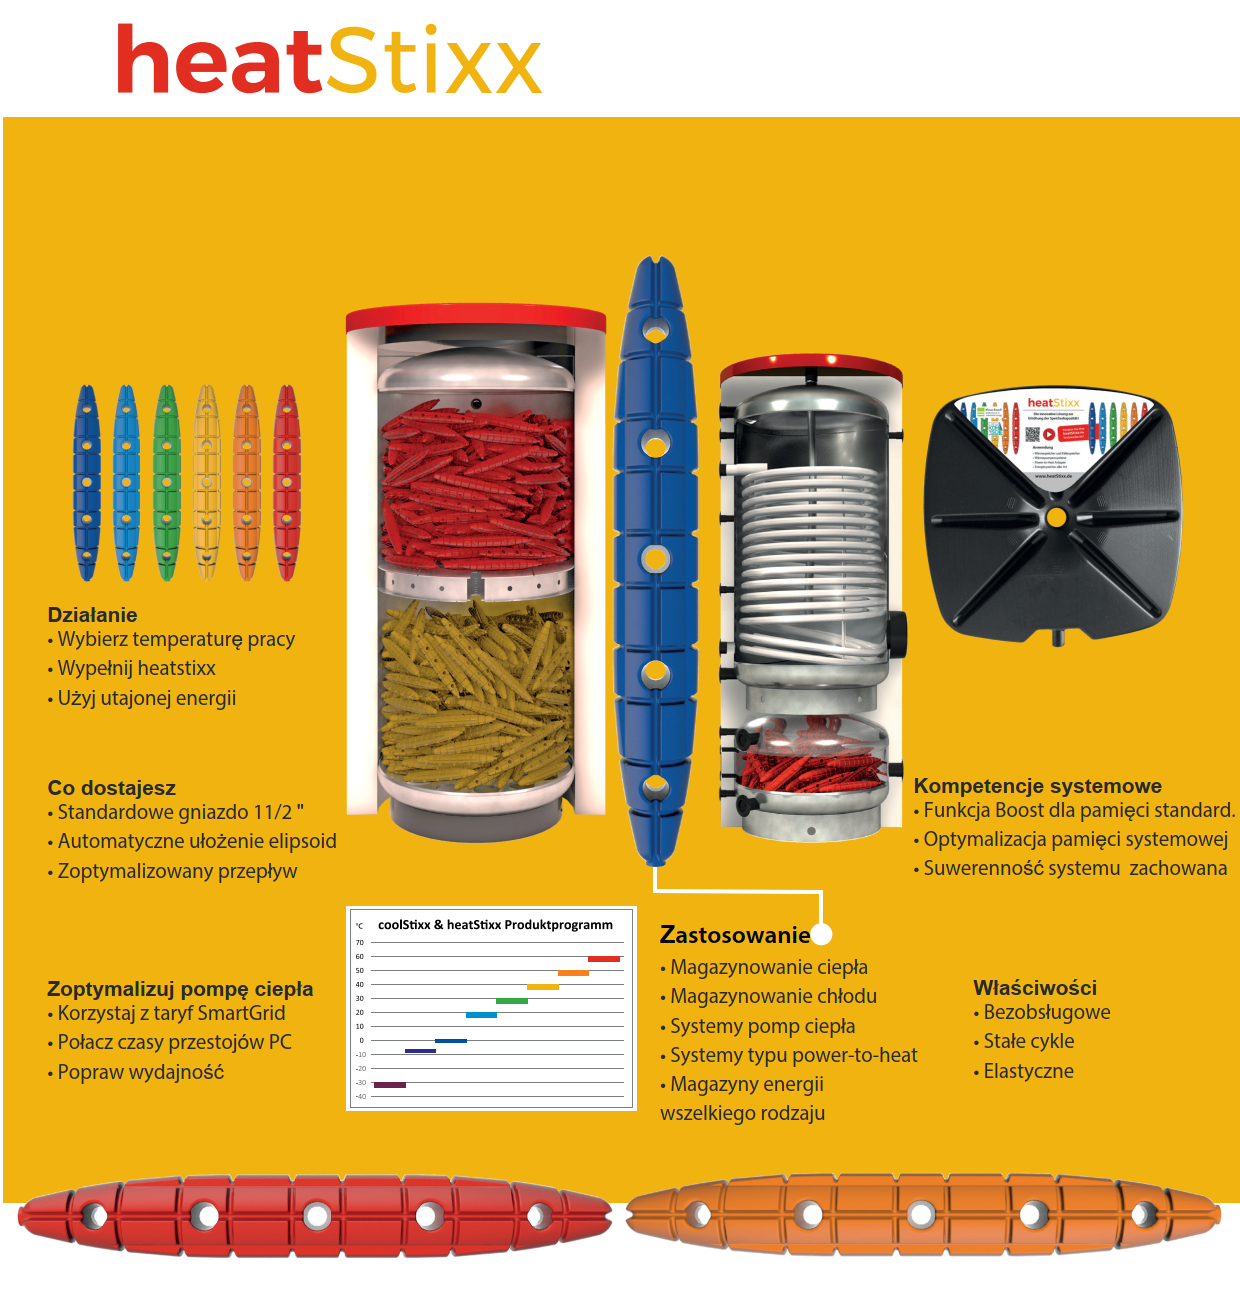 熱と冷却の貯蔵容量を増やすための革新的なソリューション